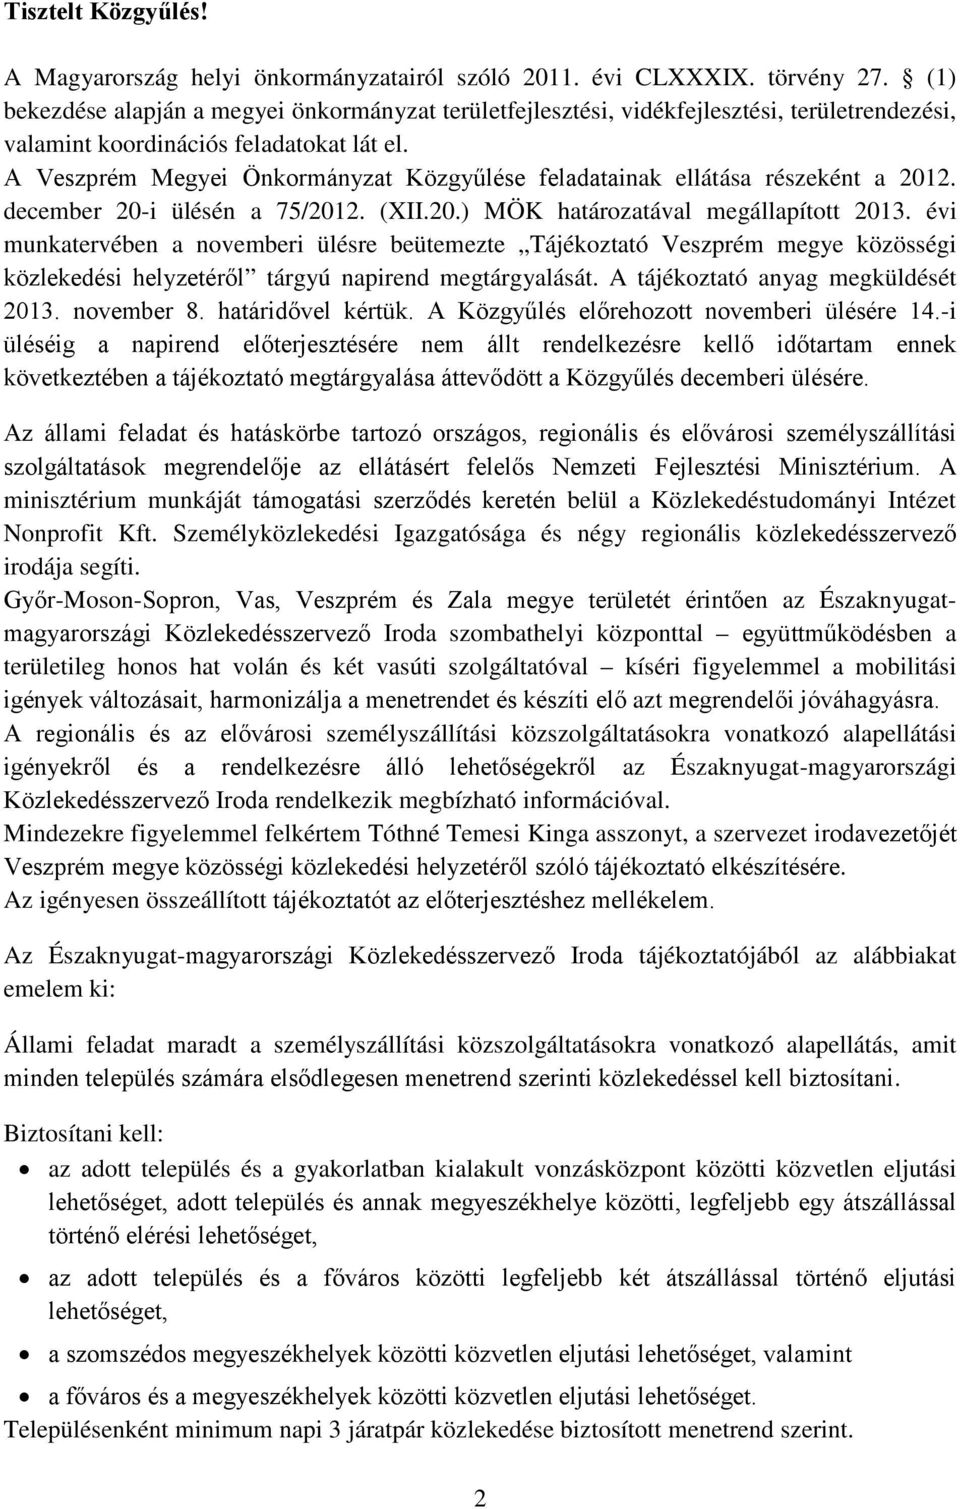 A Veszprém Megyei Önkormányzat Közgyűlése feladatainak ellátása részeként a 2012. december 20-i ülésén a 75/2012. (XII.20.) MÖK határozatával megállapított 2013.